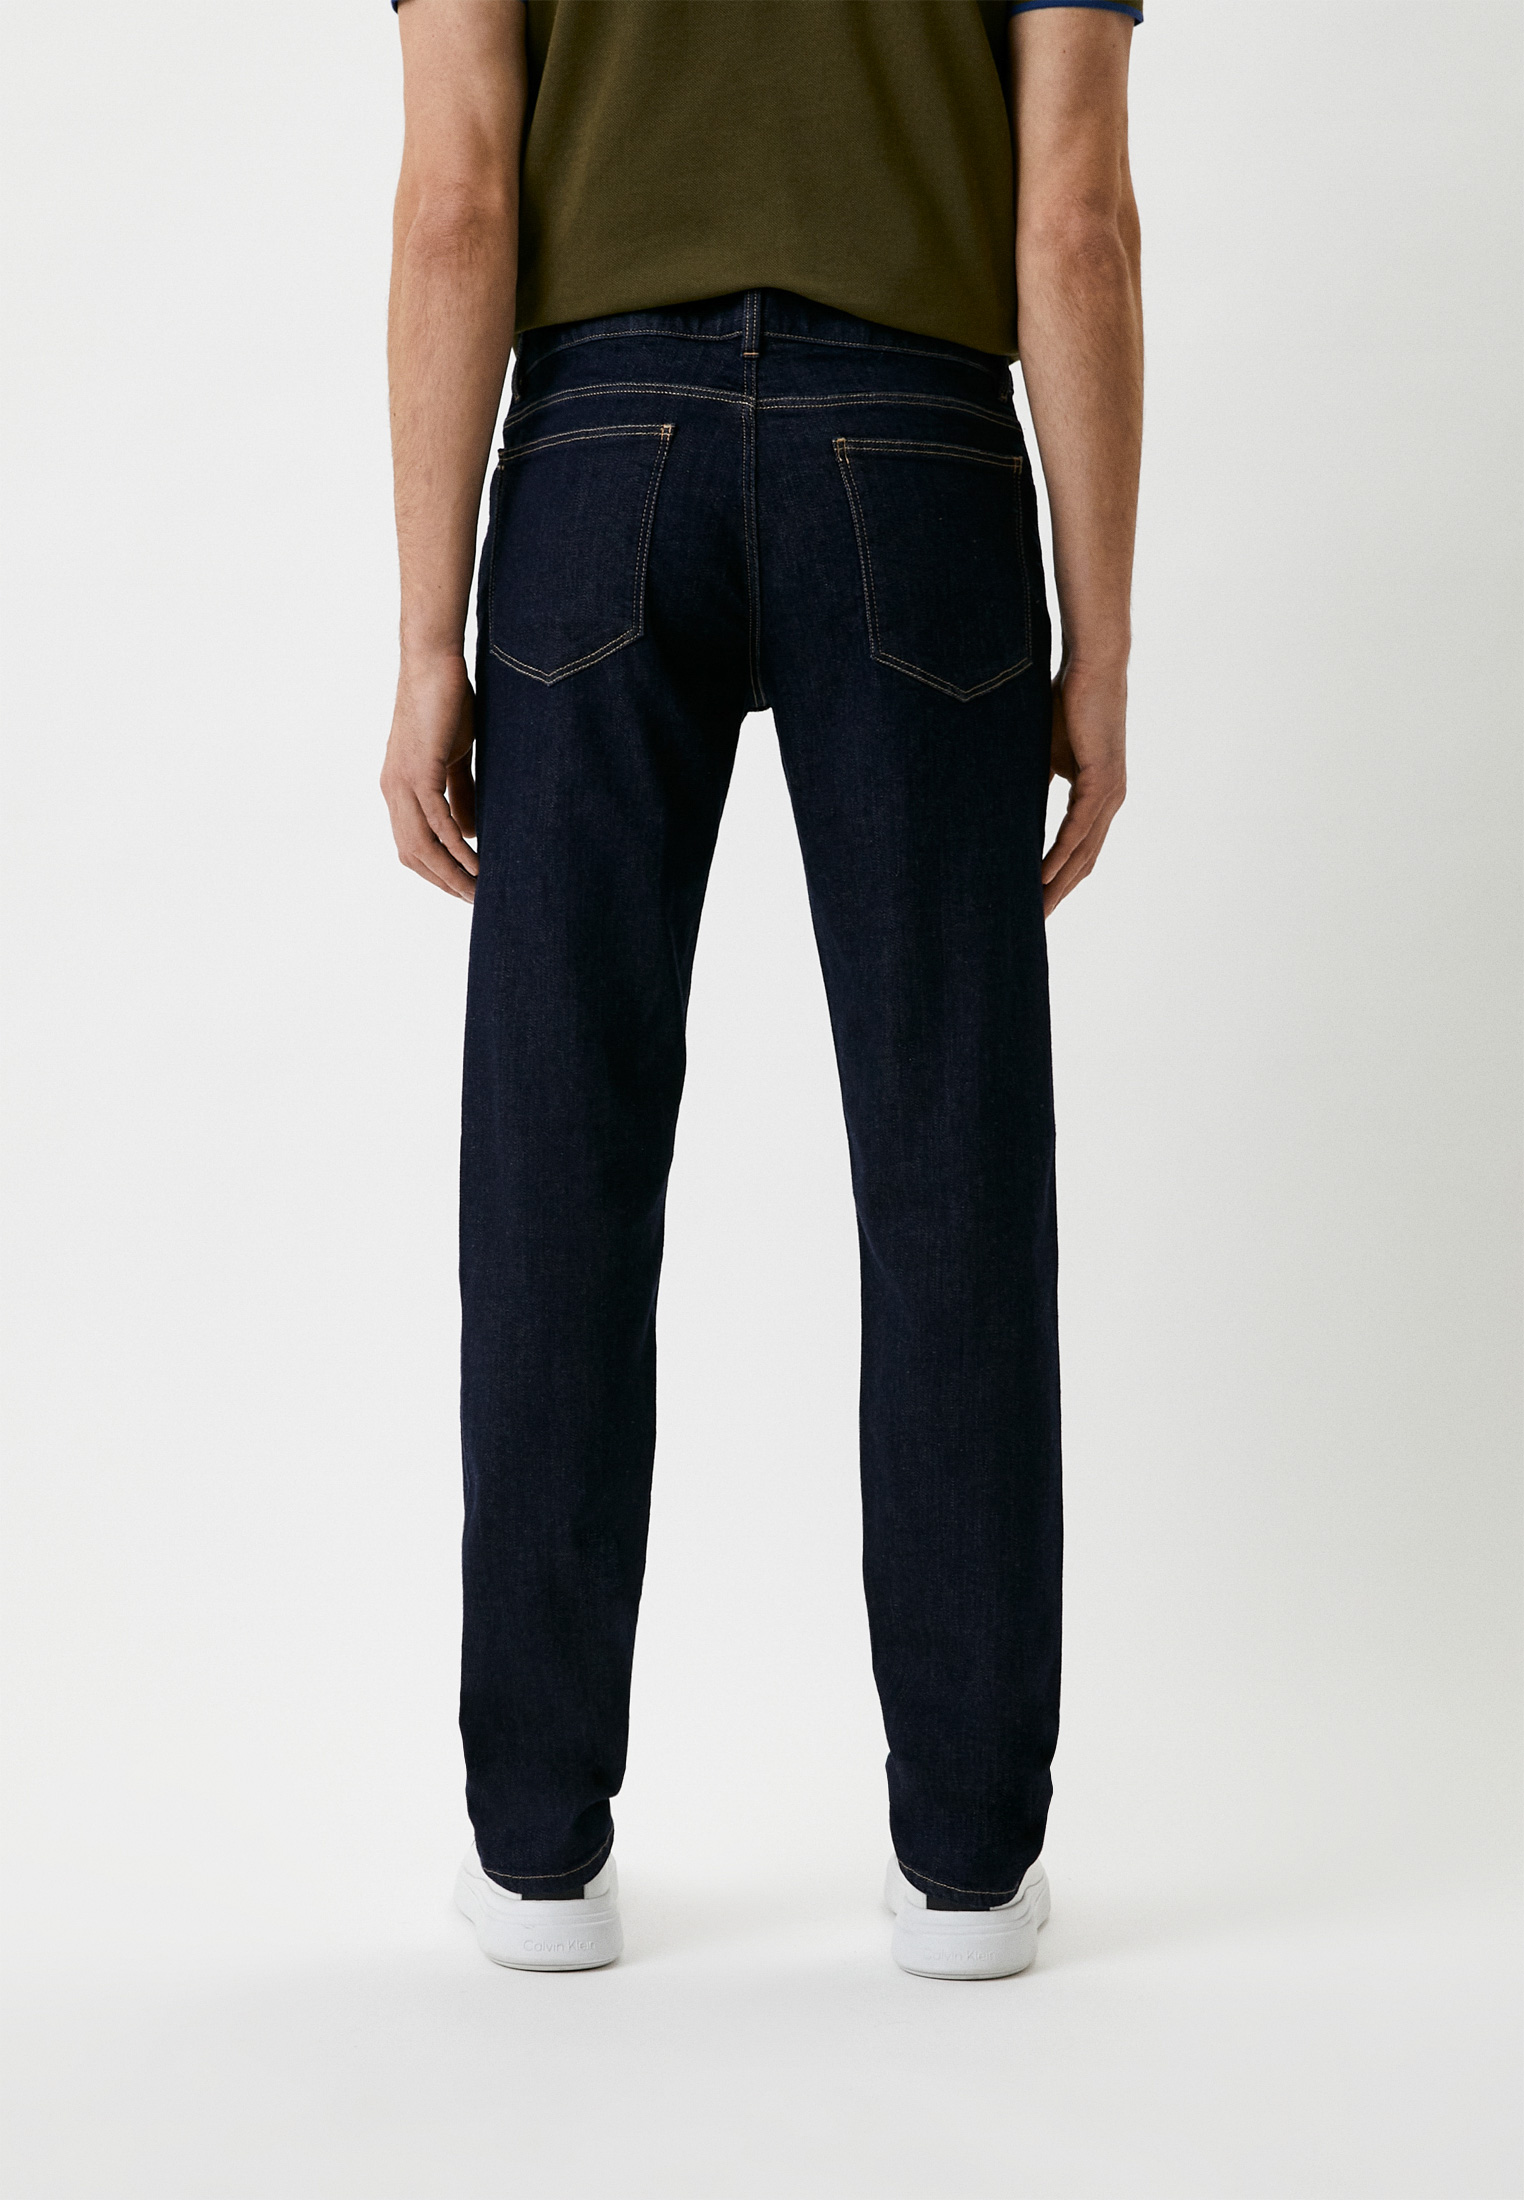 Мужские прямые джинсы Trussardi (Труссарди) 52J00000-1Y000192: изображение 3